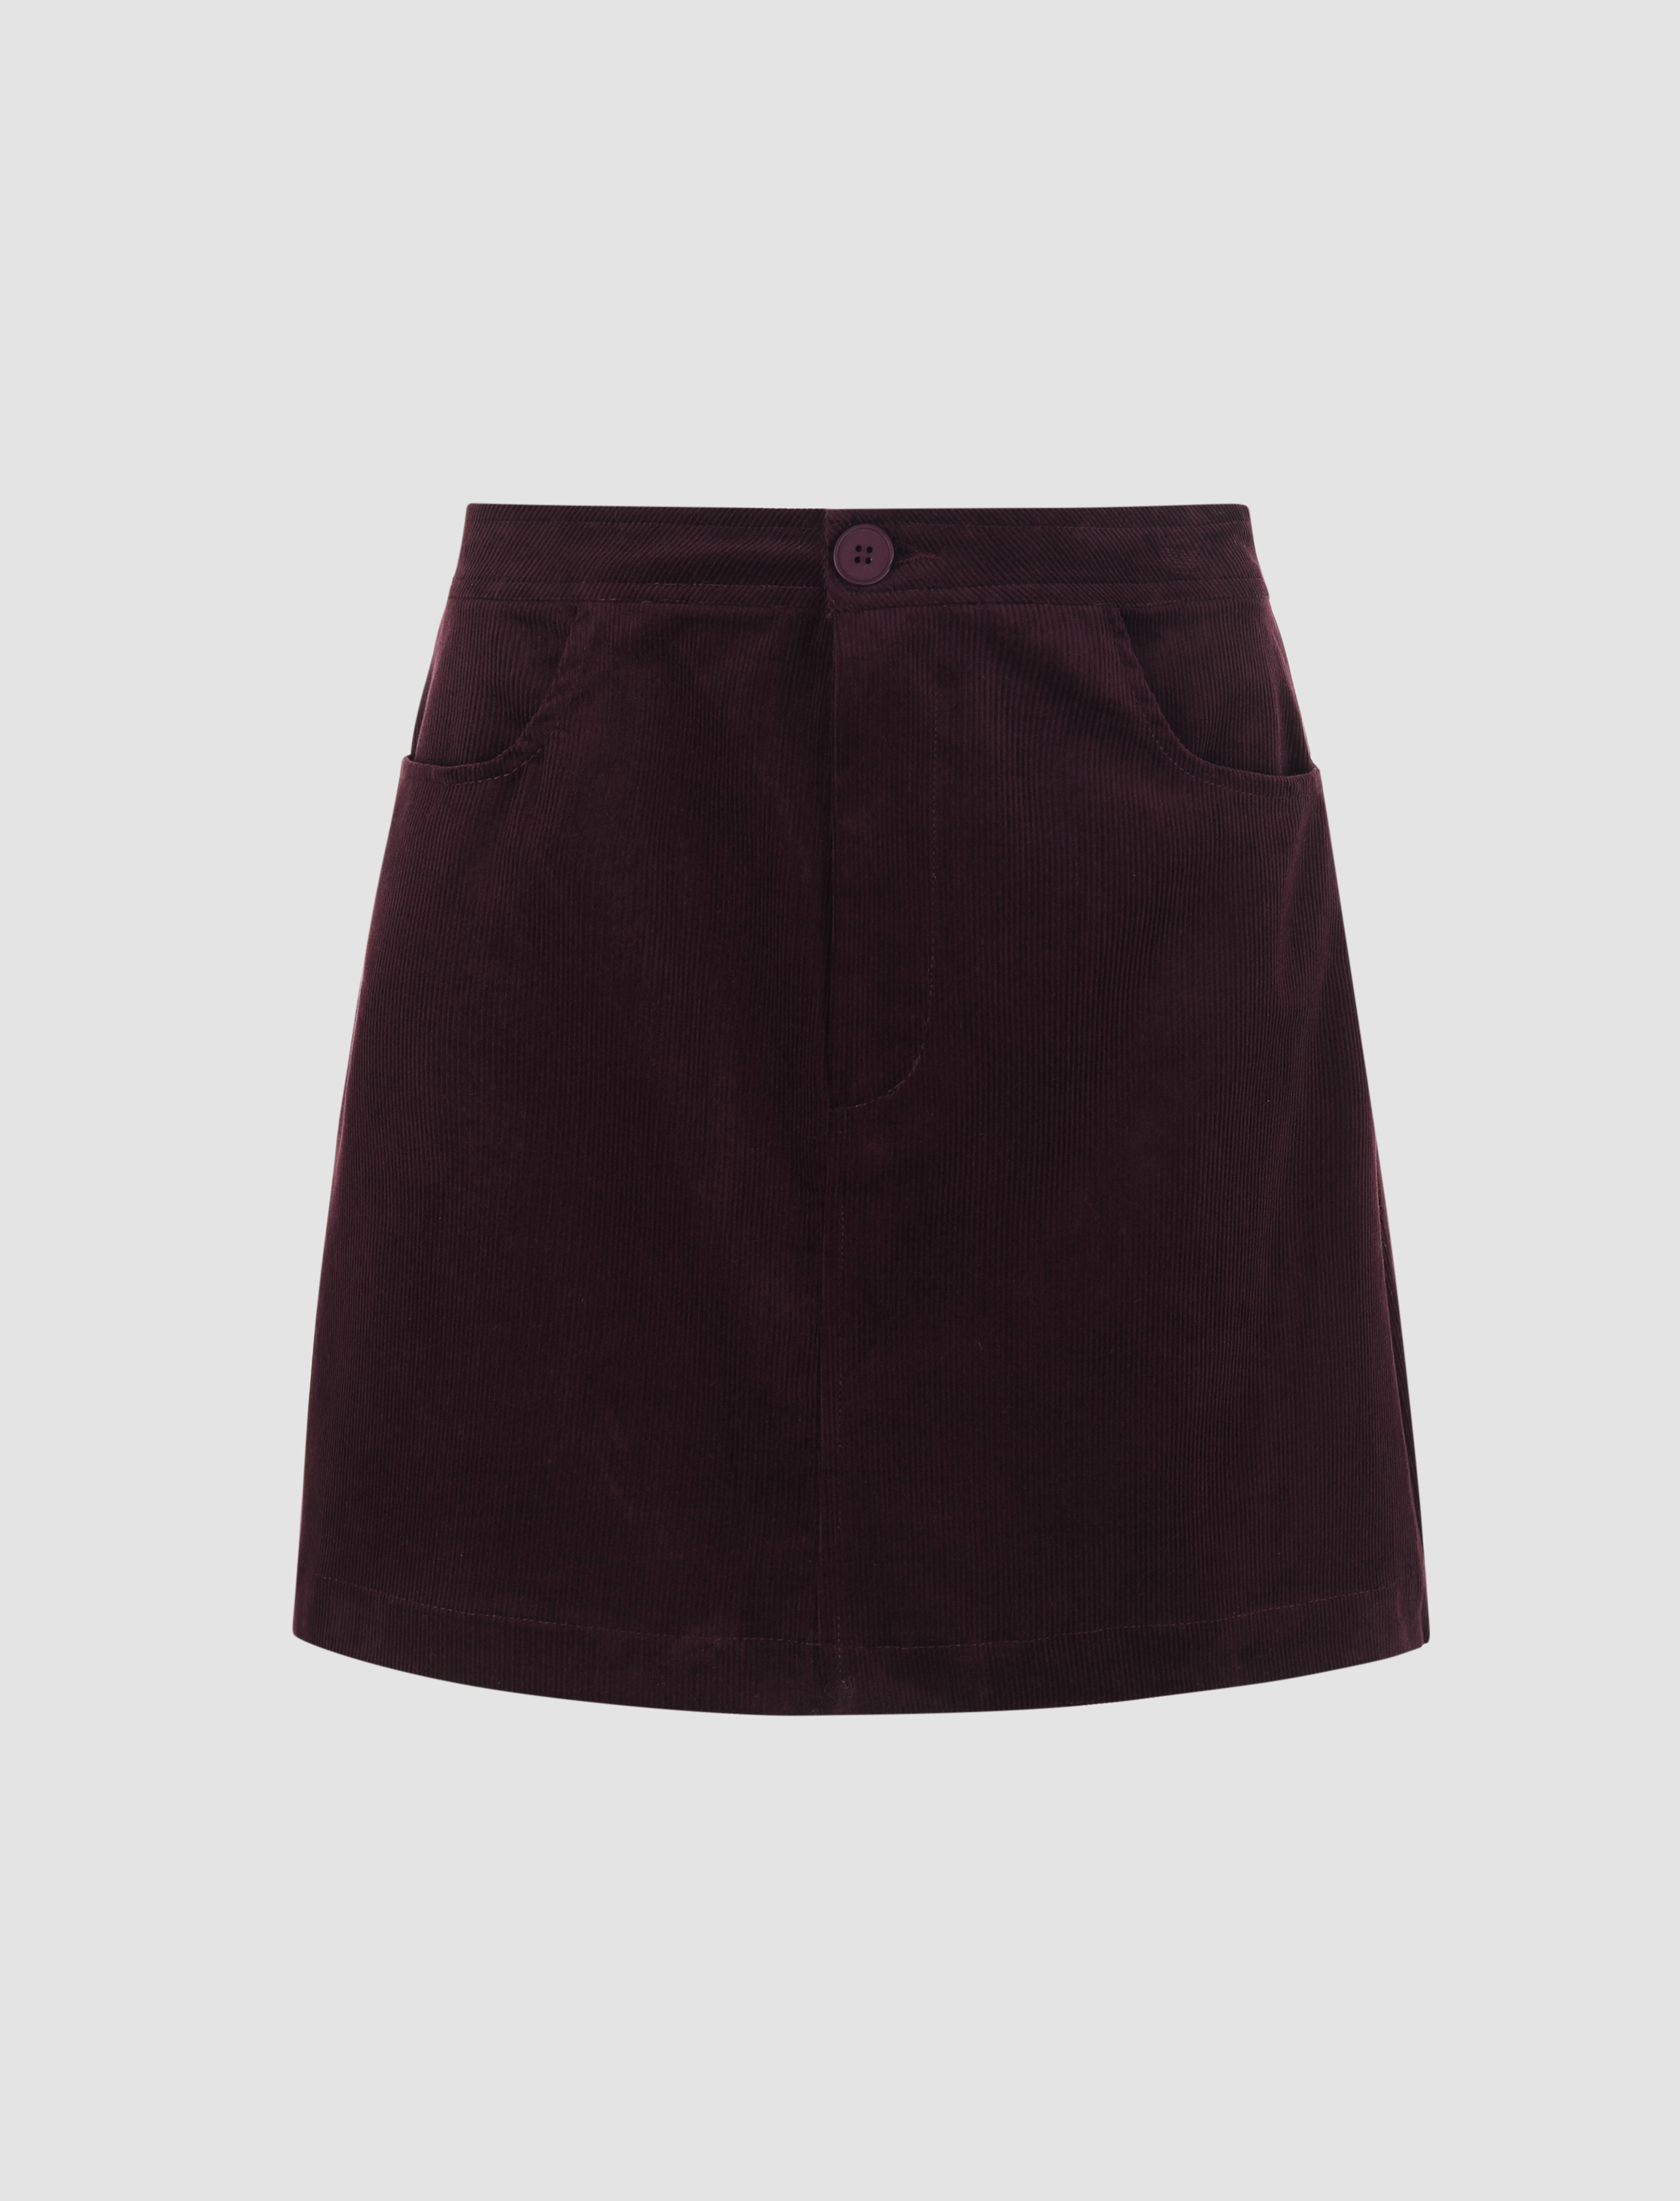 Burgundy Mini Skirt - Cider